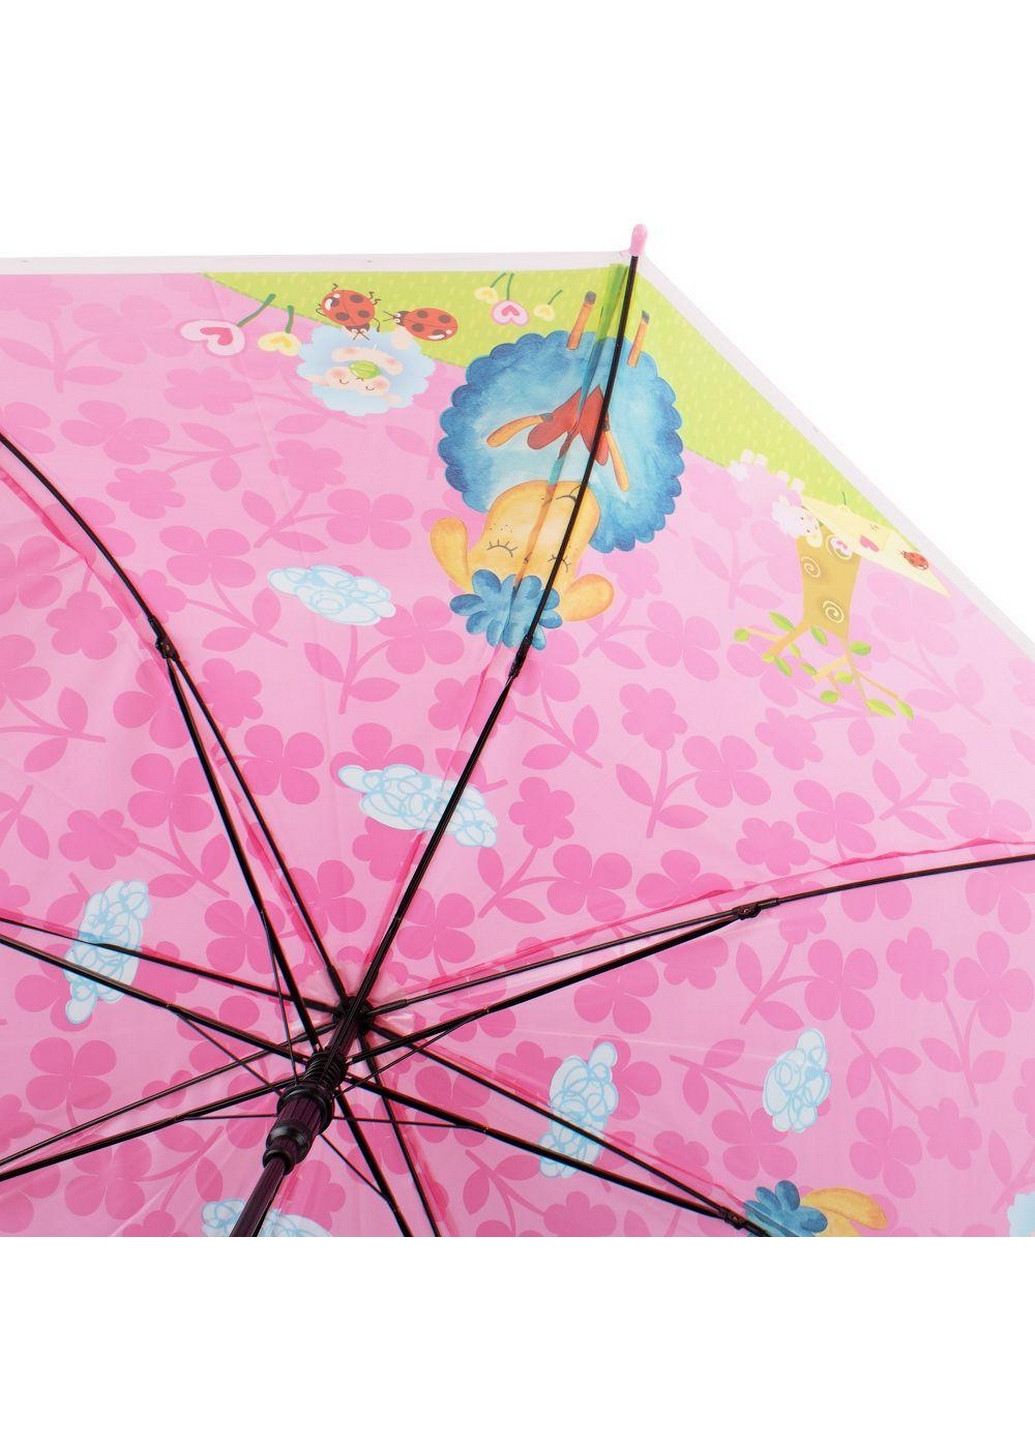 Зонт-трость детский полуавтомат 83 см TORM (260285910)